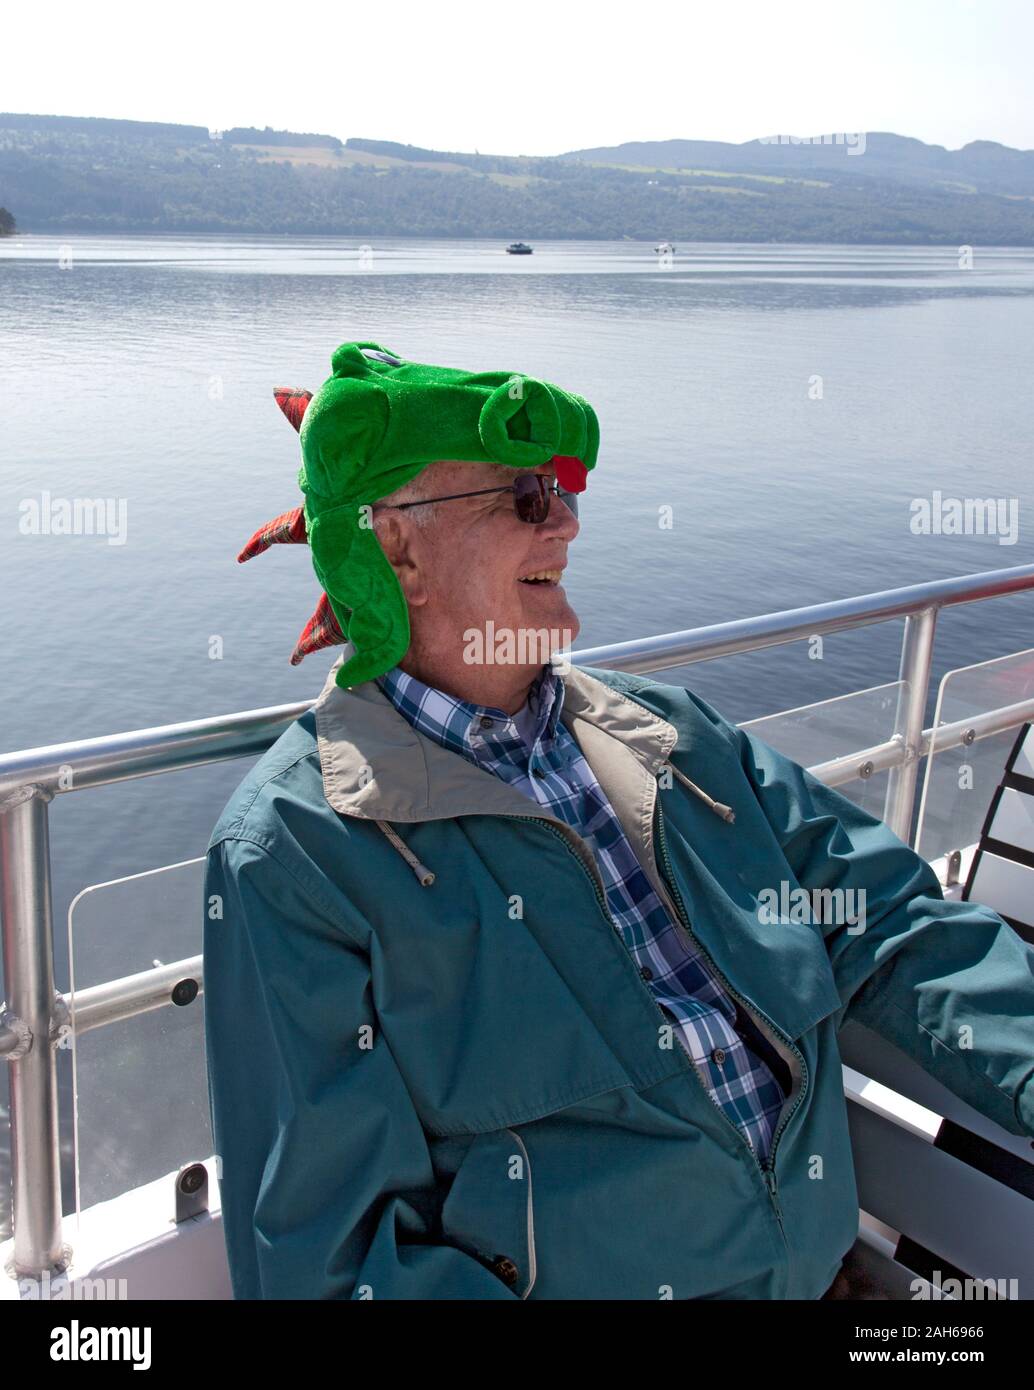 Les touristes de prendre des croisières sur le Loch Ness ont un peu de plaisir de porter des chapeaux, Nessie Highlands écossais. Banque D'Images